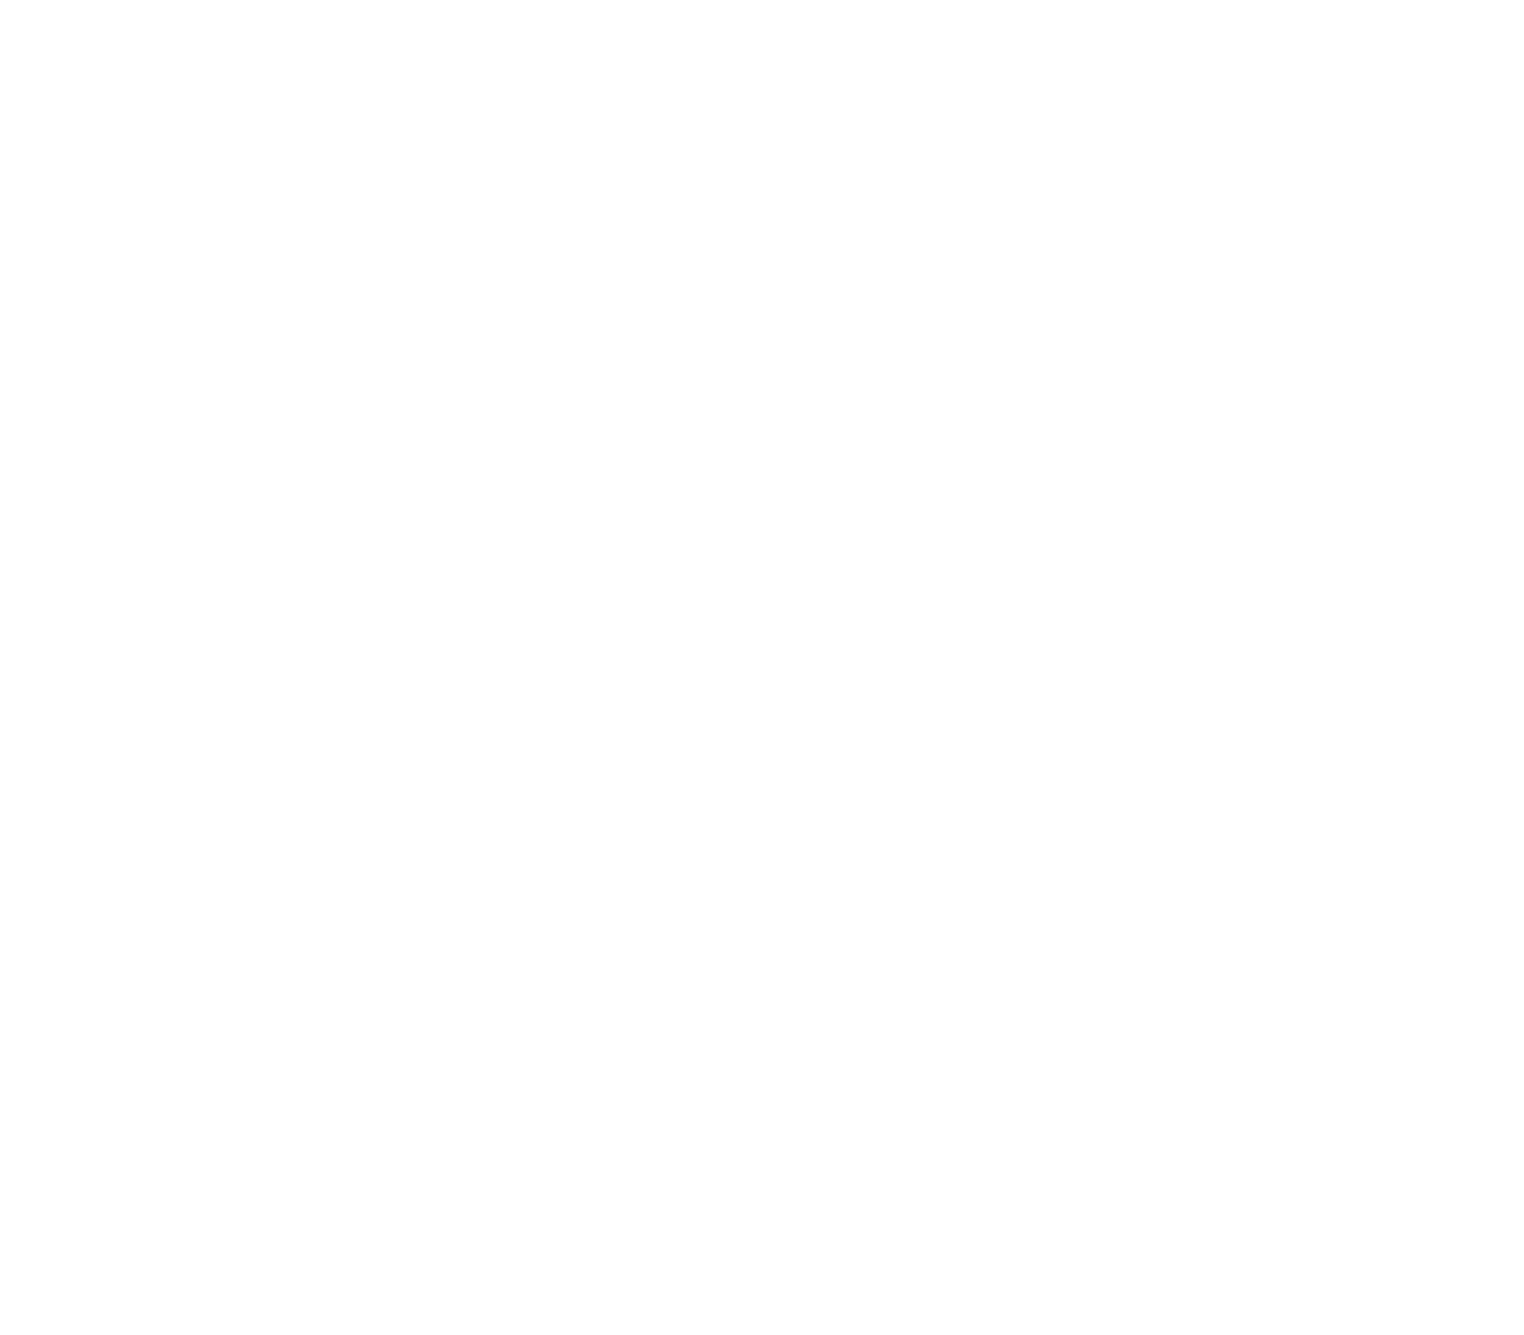 Finance House logo large for dark backgrounds (transparent PNG)